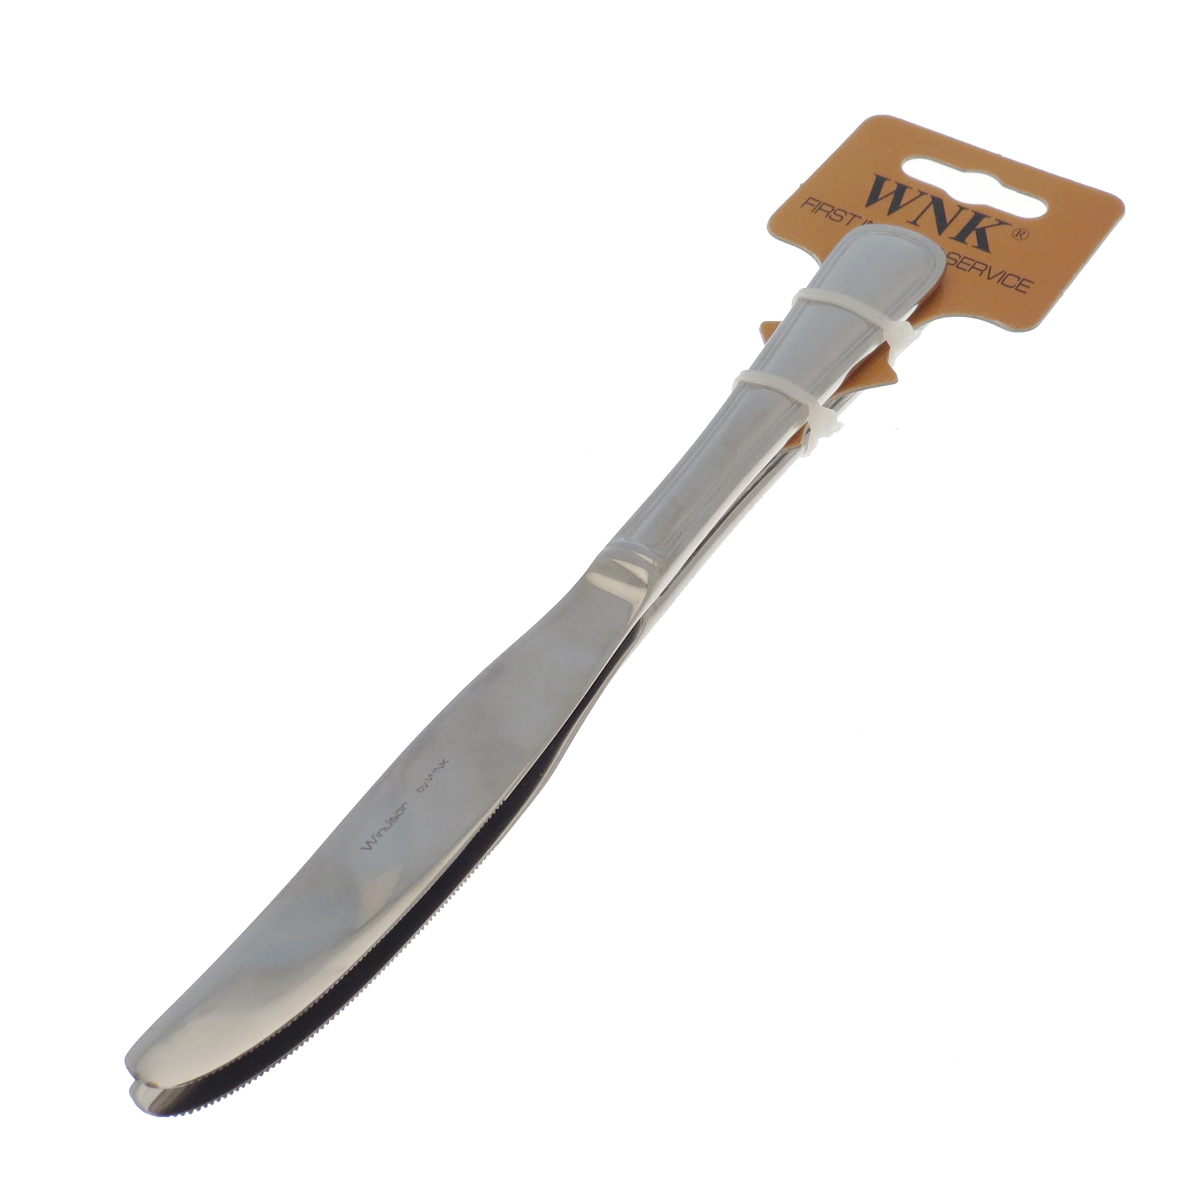 Нож столовый 23см Wnk windsor набор 2шт нож столовый remiling 23см нерж сталь 2шт уп 66832